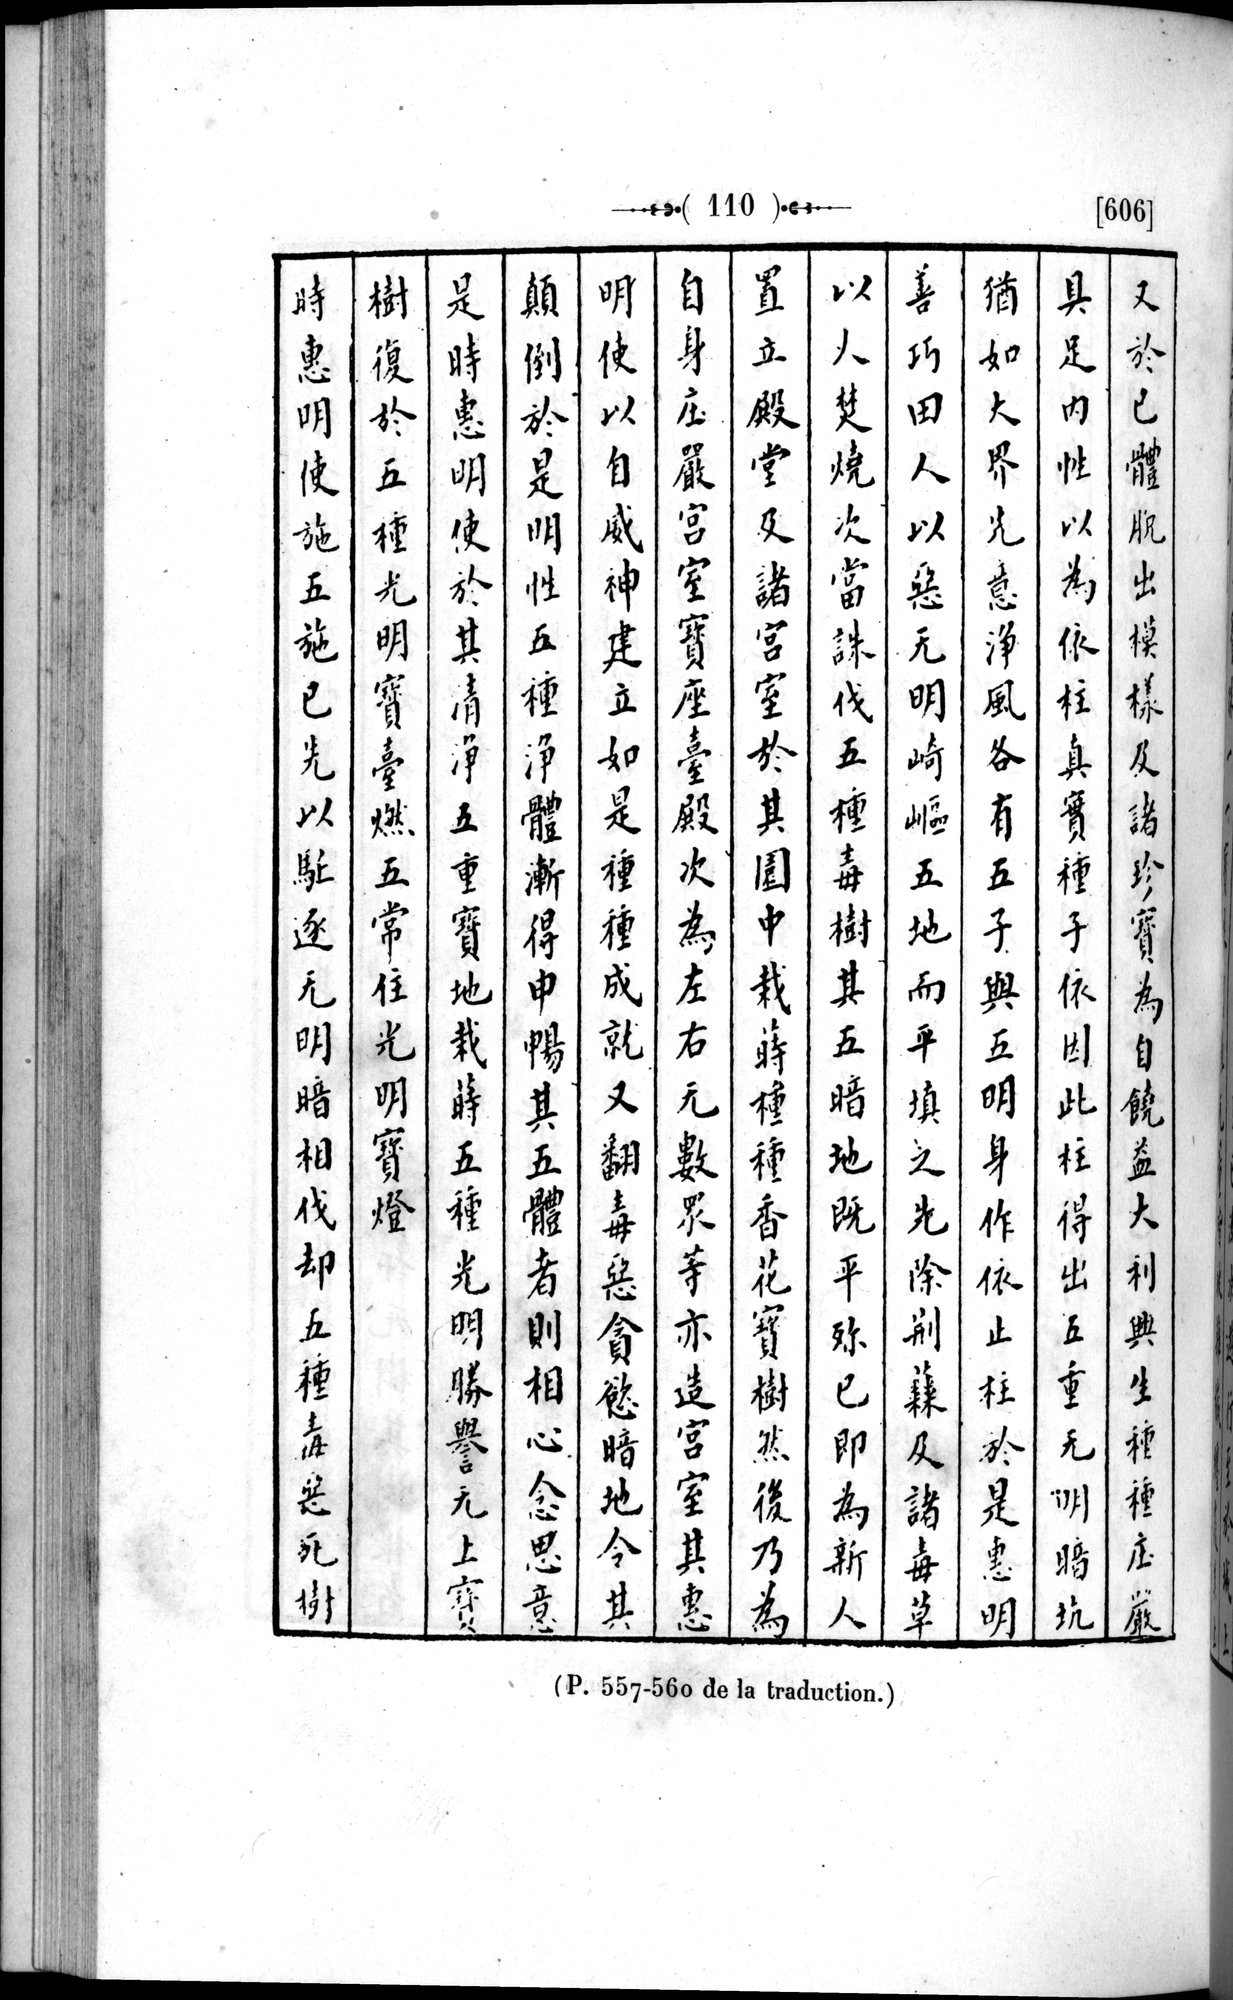 Un traité manichéen retrouvé en Chine : vol.1 / Page 120 (Grayscale High Resolution Image)